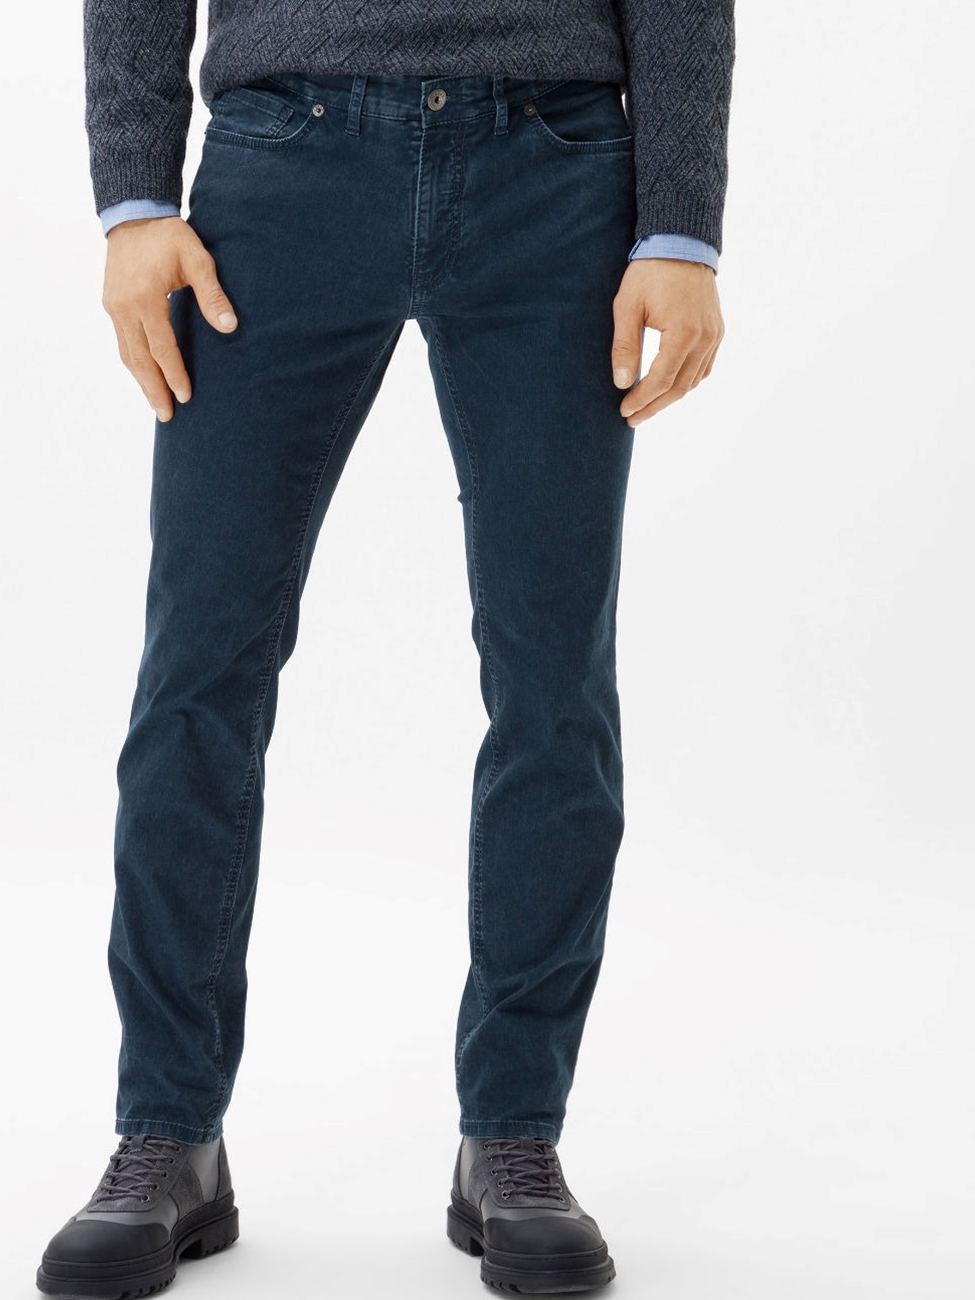 Storm Chuck Hi Flex Five Pockets Men's Trouser | Brax Men's Trousers |  Sam's Tailoring Fine Men's Clothing